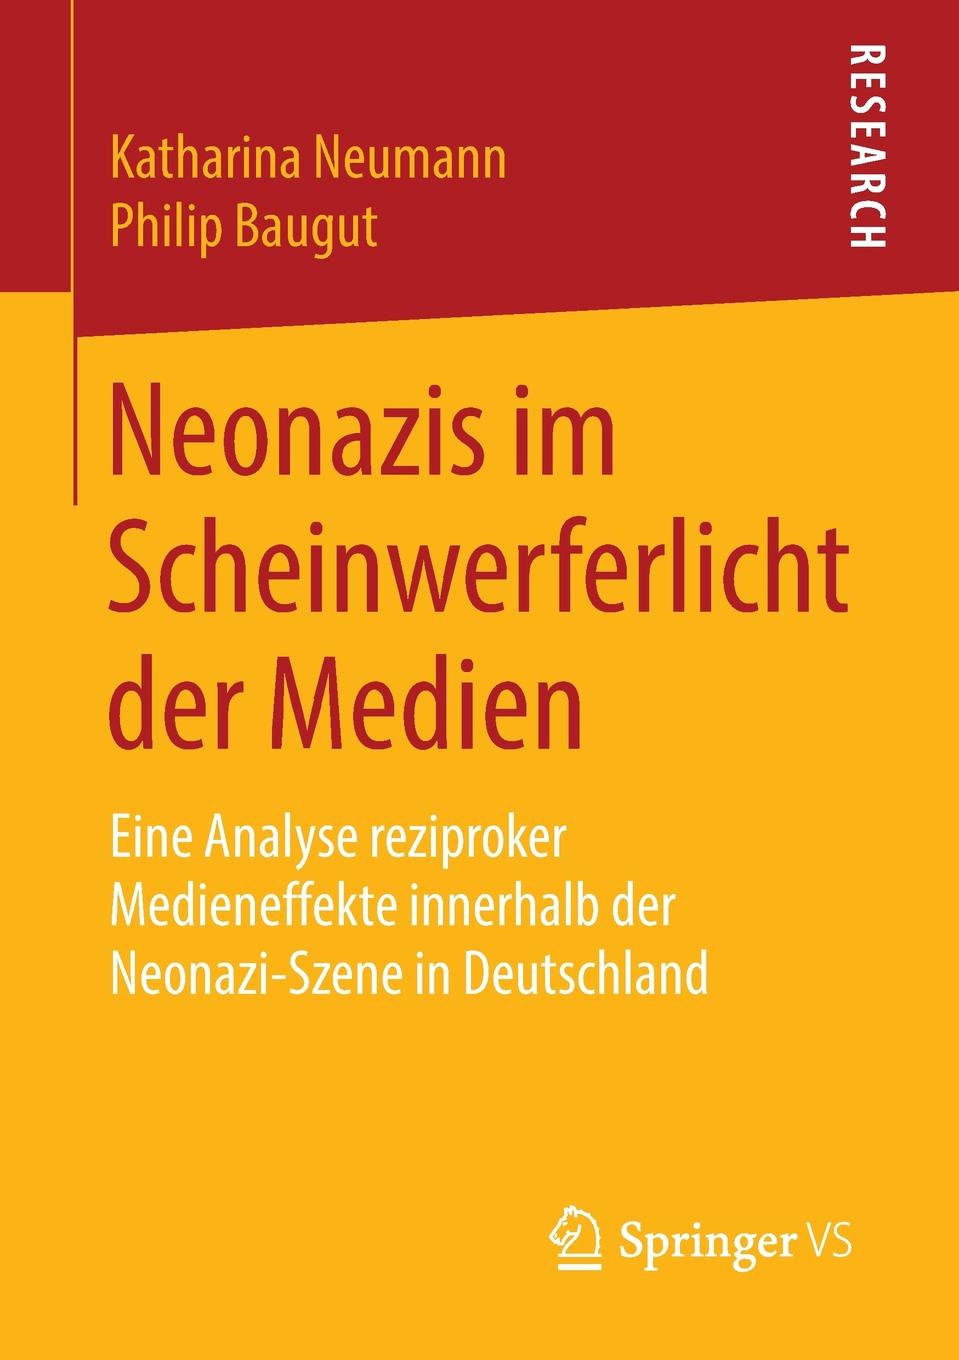 Neonazis im Scheinwerferlicht der Medien. Eine Analyse reziproker Medieneffekte innerhalb der Neonazi-Szene in Deutschland